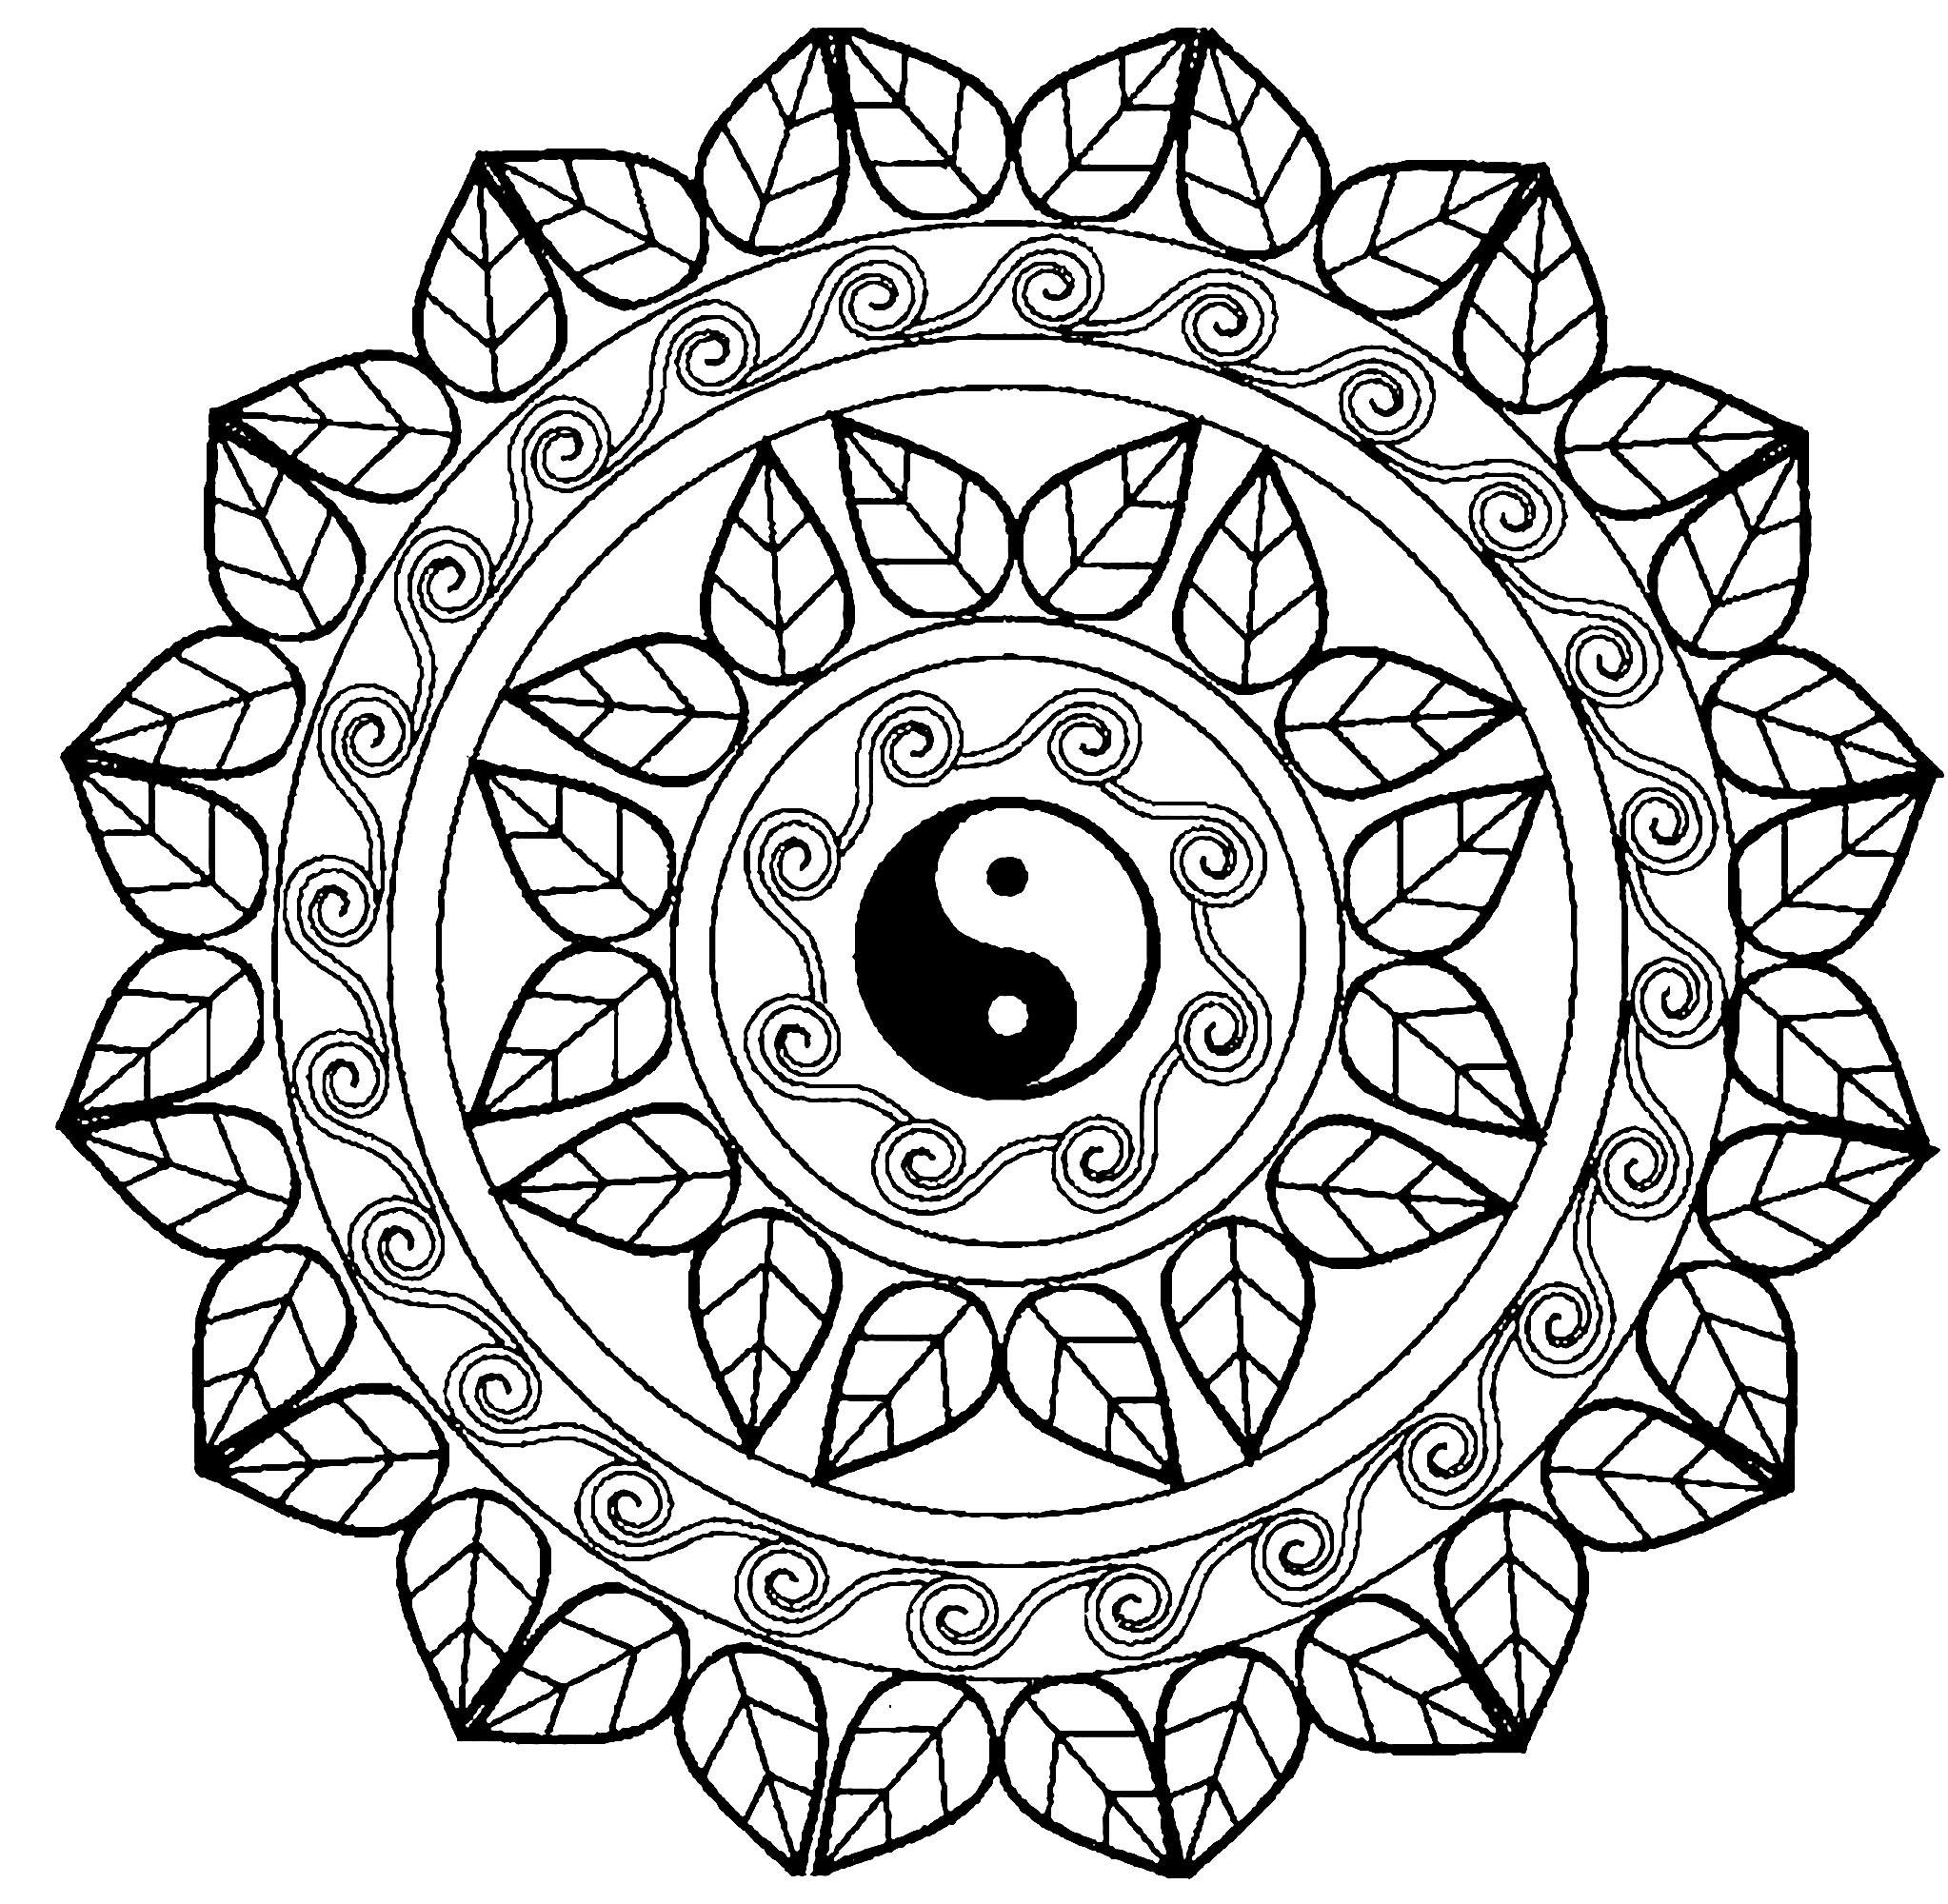 Choisissez la technique que vous préférez pour mettre en couleur ce Mandala exclusif comportant en son centre le fameux symbole du Yin & Yang ! Intégrez votre âme à ce beau Mandala.